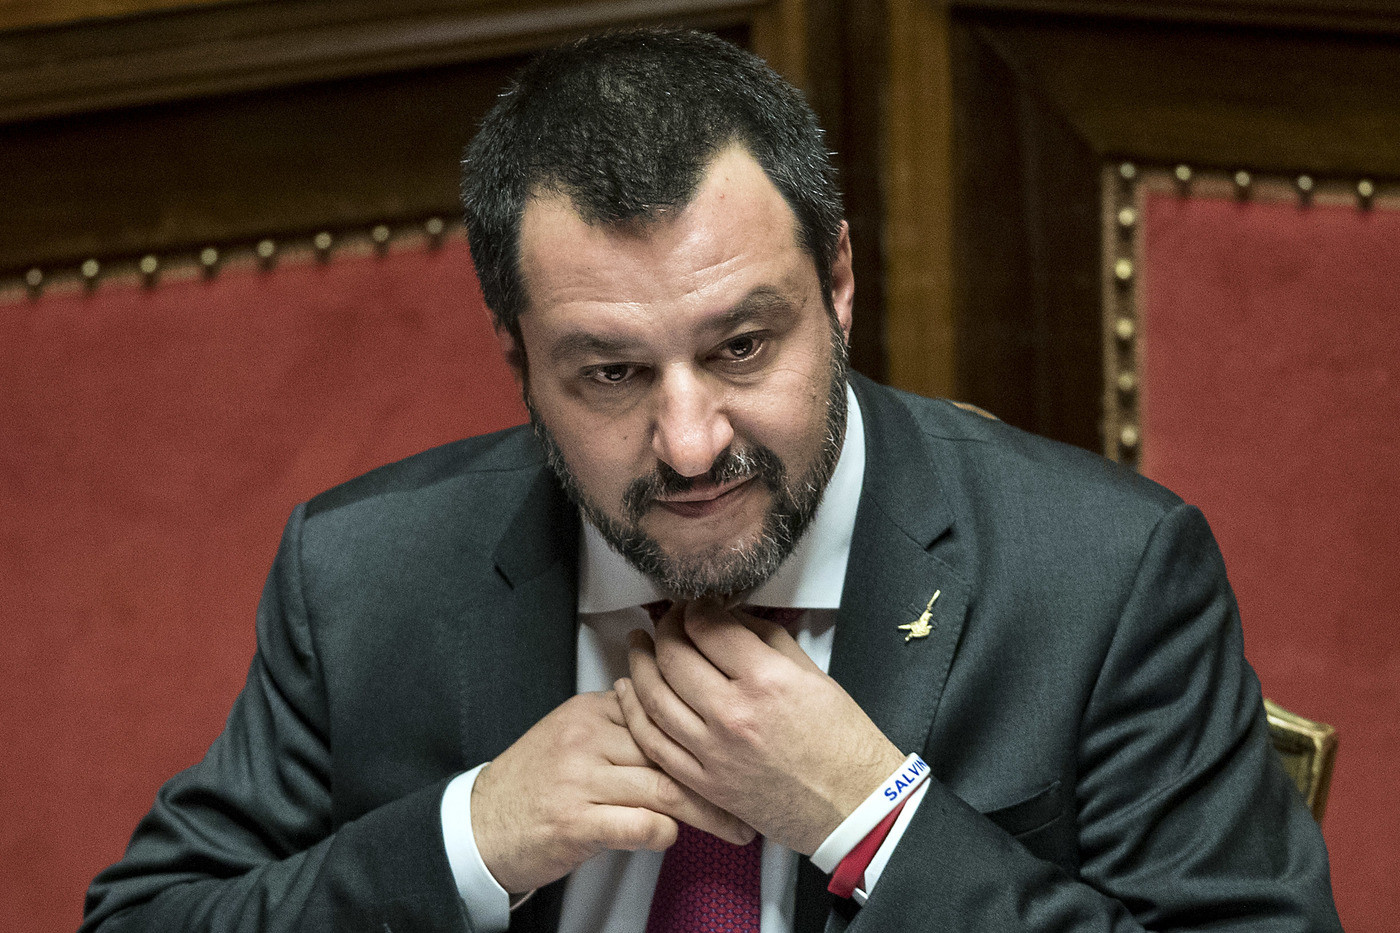 Empoli, morto durante il fermo. Salvini: “Cosa dovevano fare i poliziotti, offrire il cappuccino?”